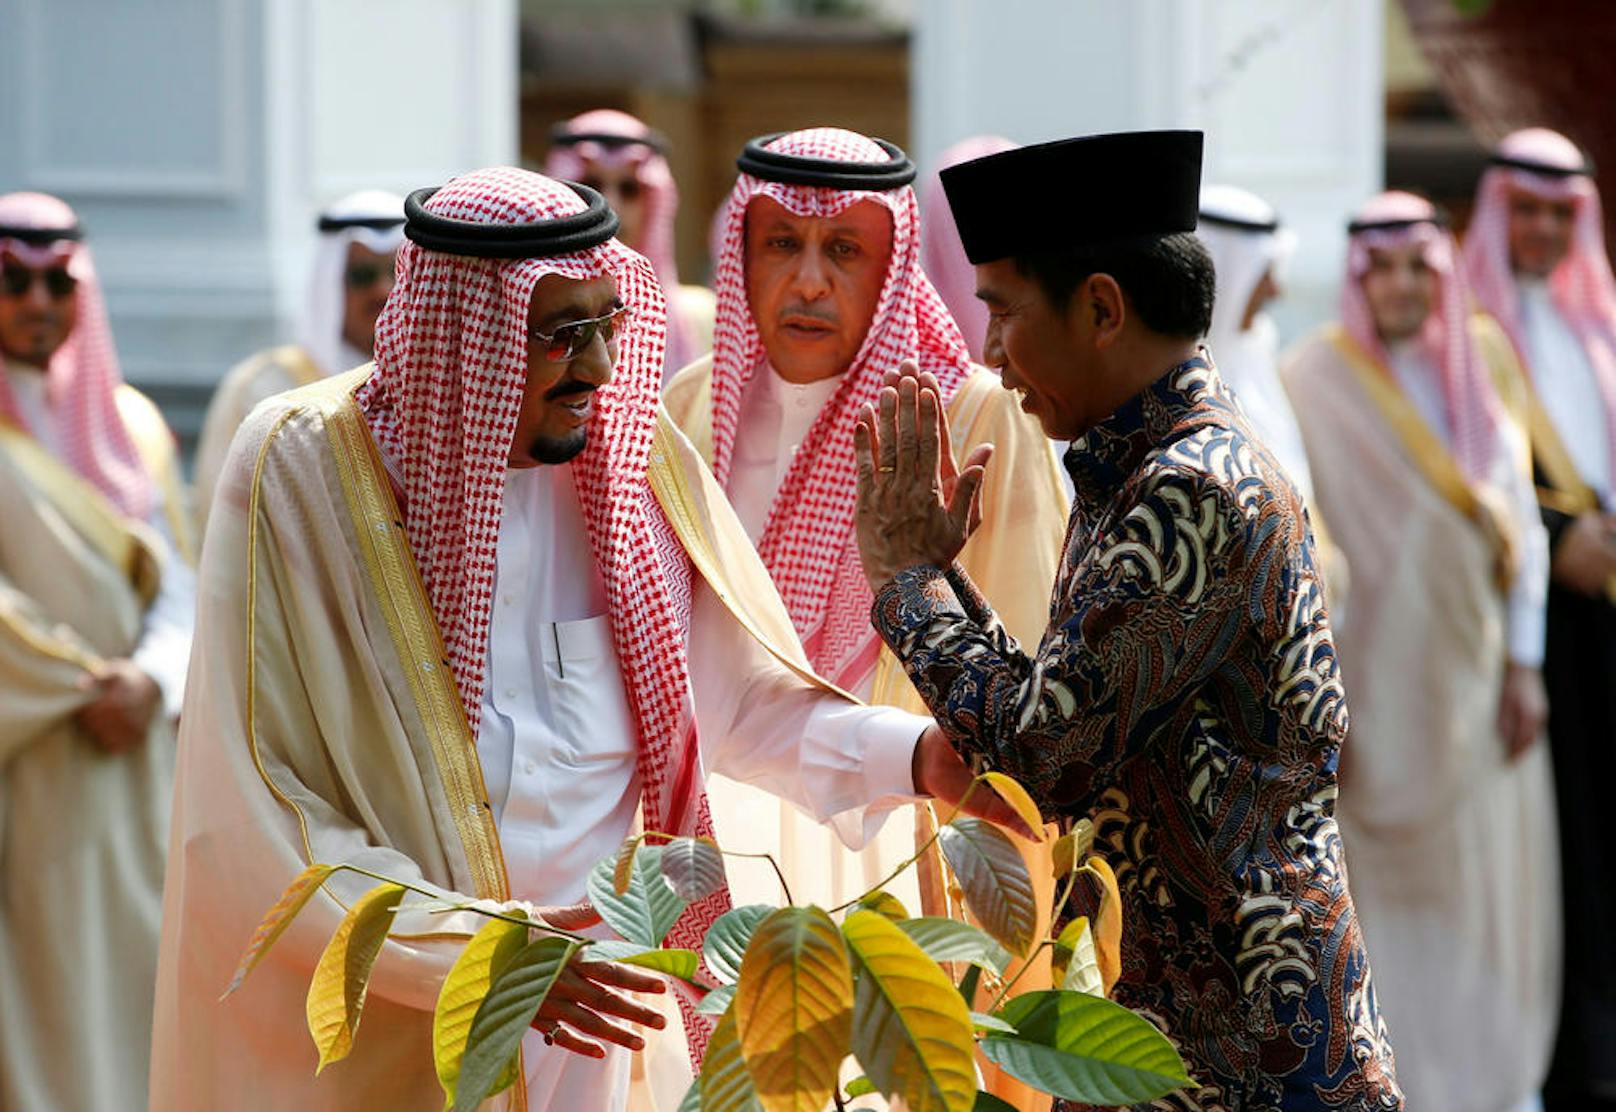 02.03.2017: Saudi-König auf Asien-Tour:
Der 81-jährige saudische König Salman ibn Abd Al-Asis hat seine pompöse Asien-Tour in Malaysia und Indonesien begonnen. Seine vielbeachtete Reise wird ihn auch nach Bali, China, Japan und die Malediven führen.